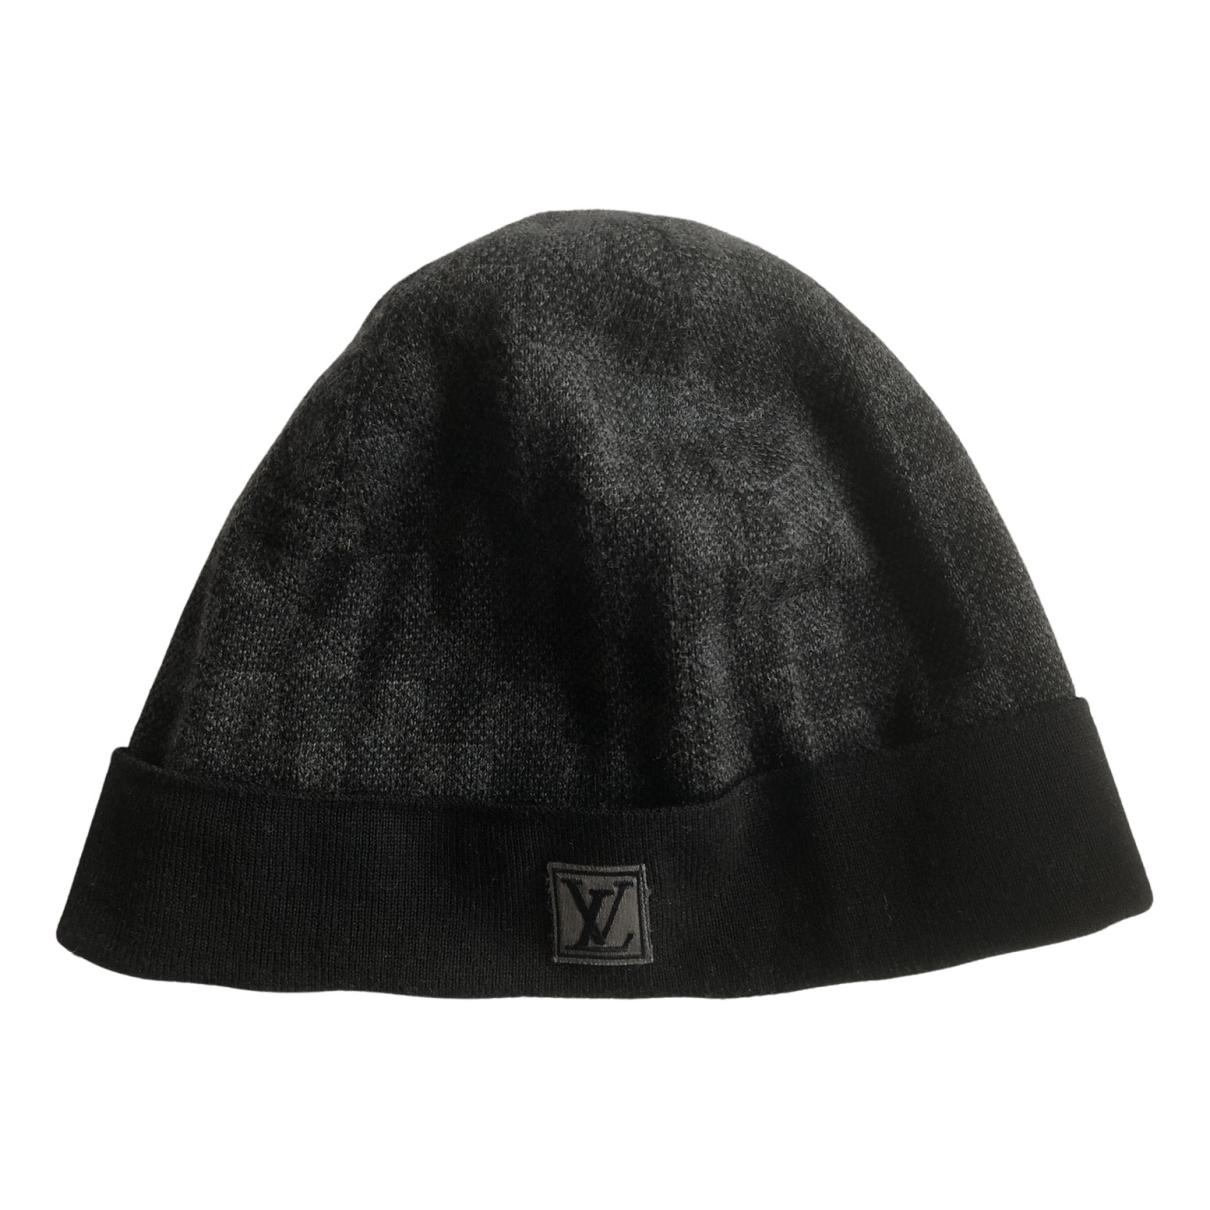 Wool hat Louis Vuitton Black size M International in Wool - 33008723